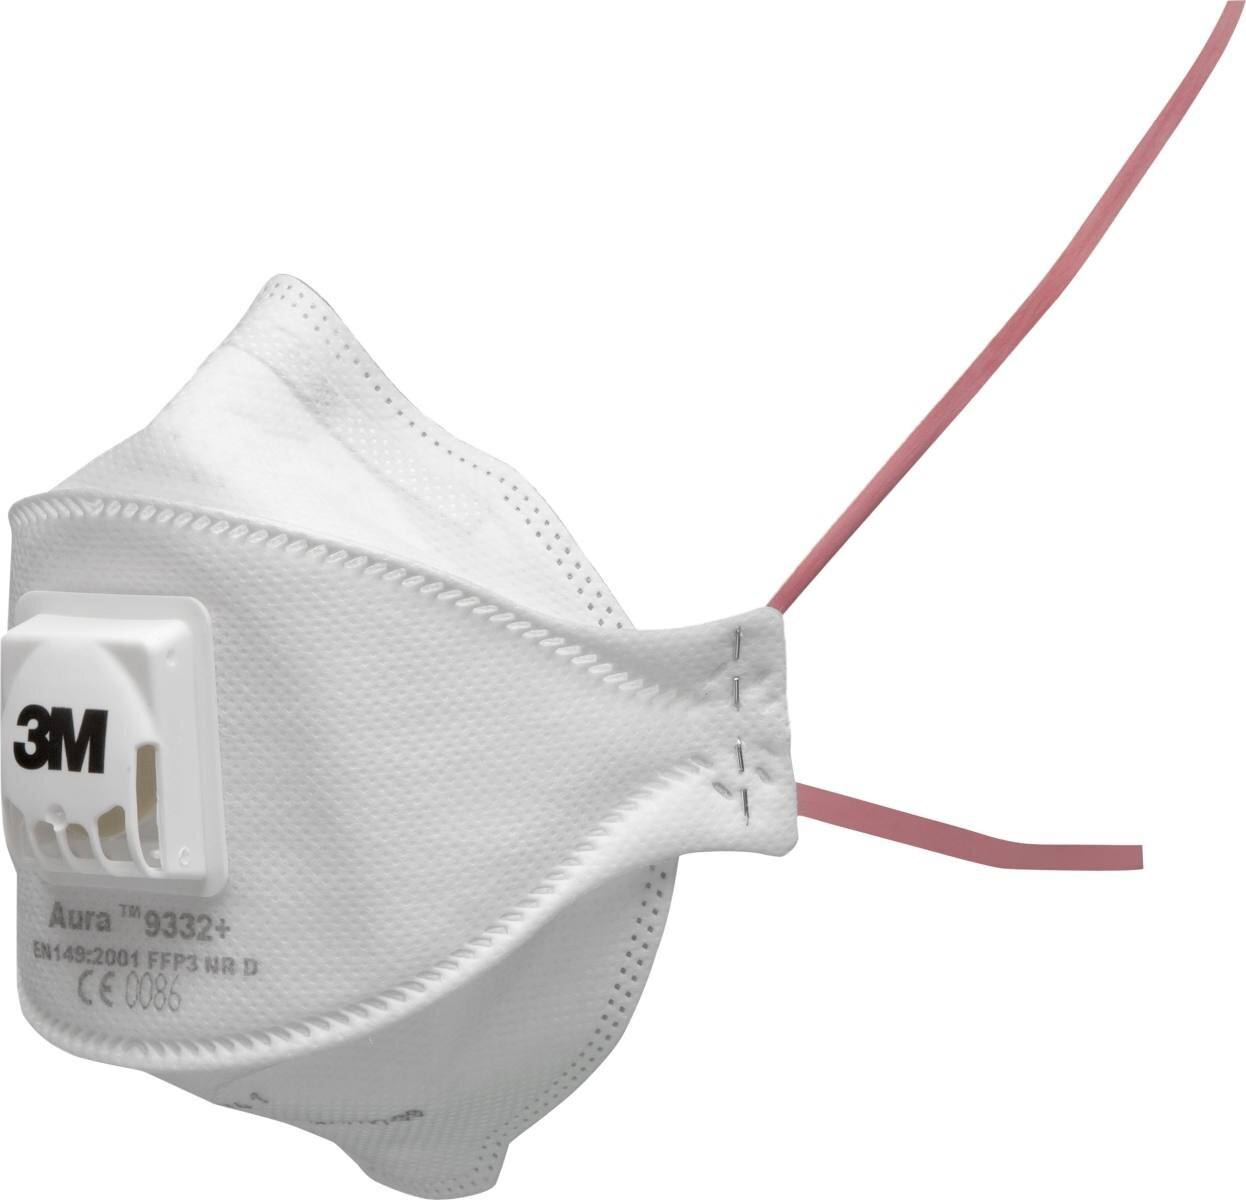 3M 9332+ Aura Atemschutzmaske FFP3 mit Cool-Flow Ausatemventil, bis zum 30-fachen des Grenzwertes (hygienisch einzelverpackt)